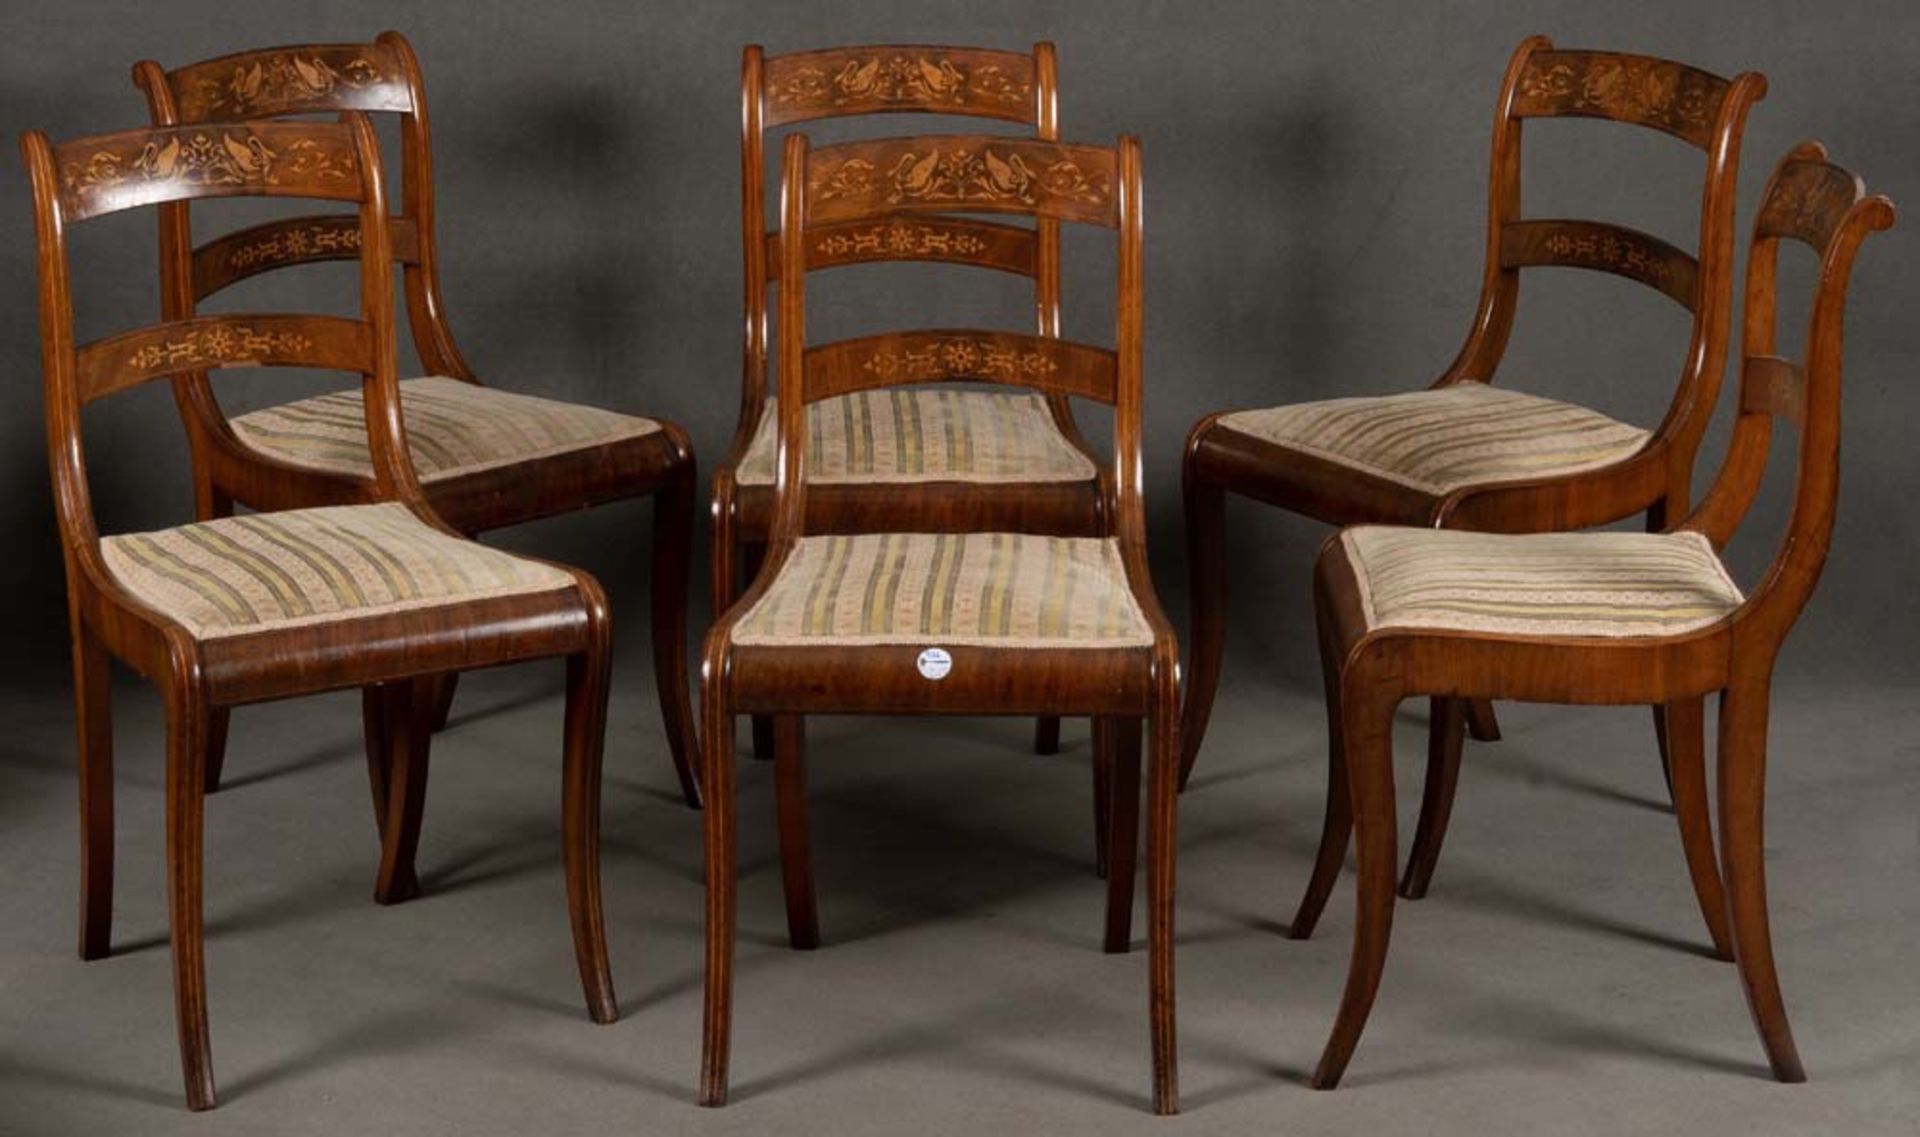 Sechs Biedermeier-Stühle. Wohl Lübeck 19. Jh. Mahagoni, furniert, mit Fadeneinlagen, marketiert